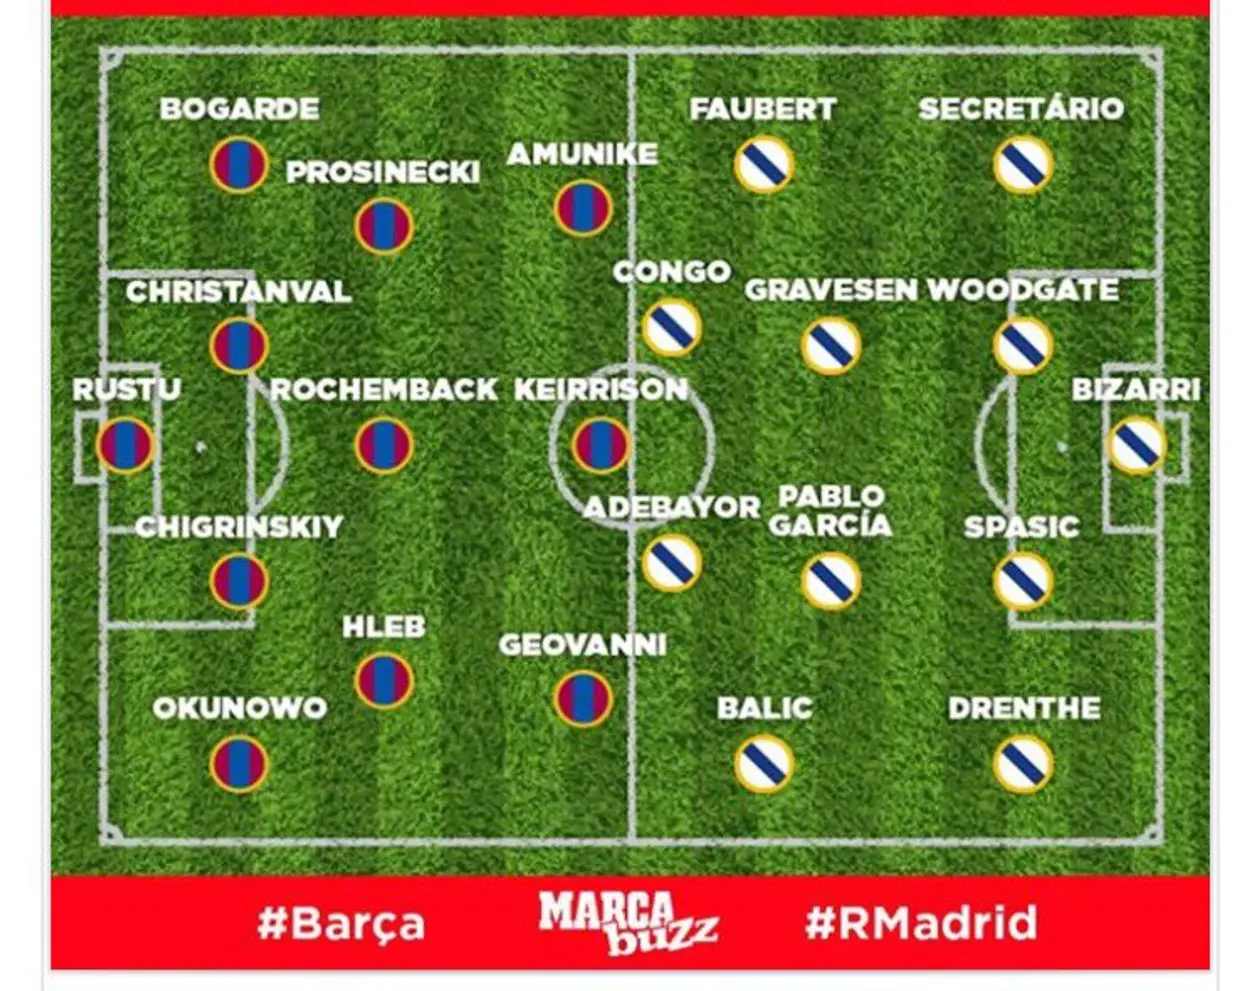 Александр Глеб попал в число самых худших игроков «Барселоны» по версии Marca